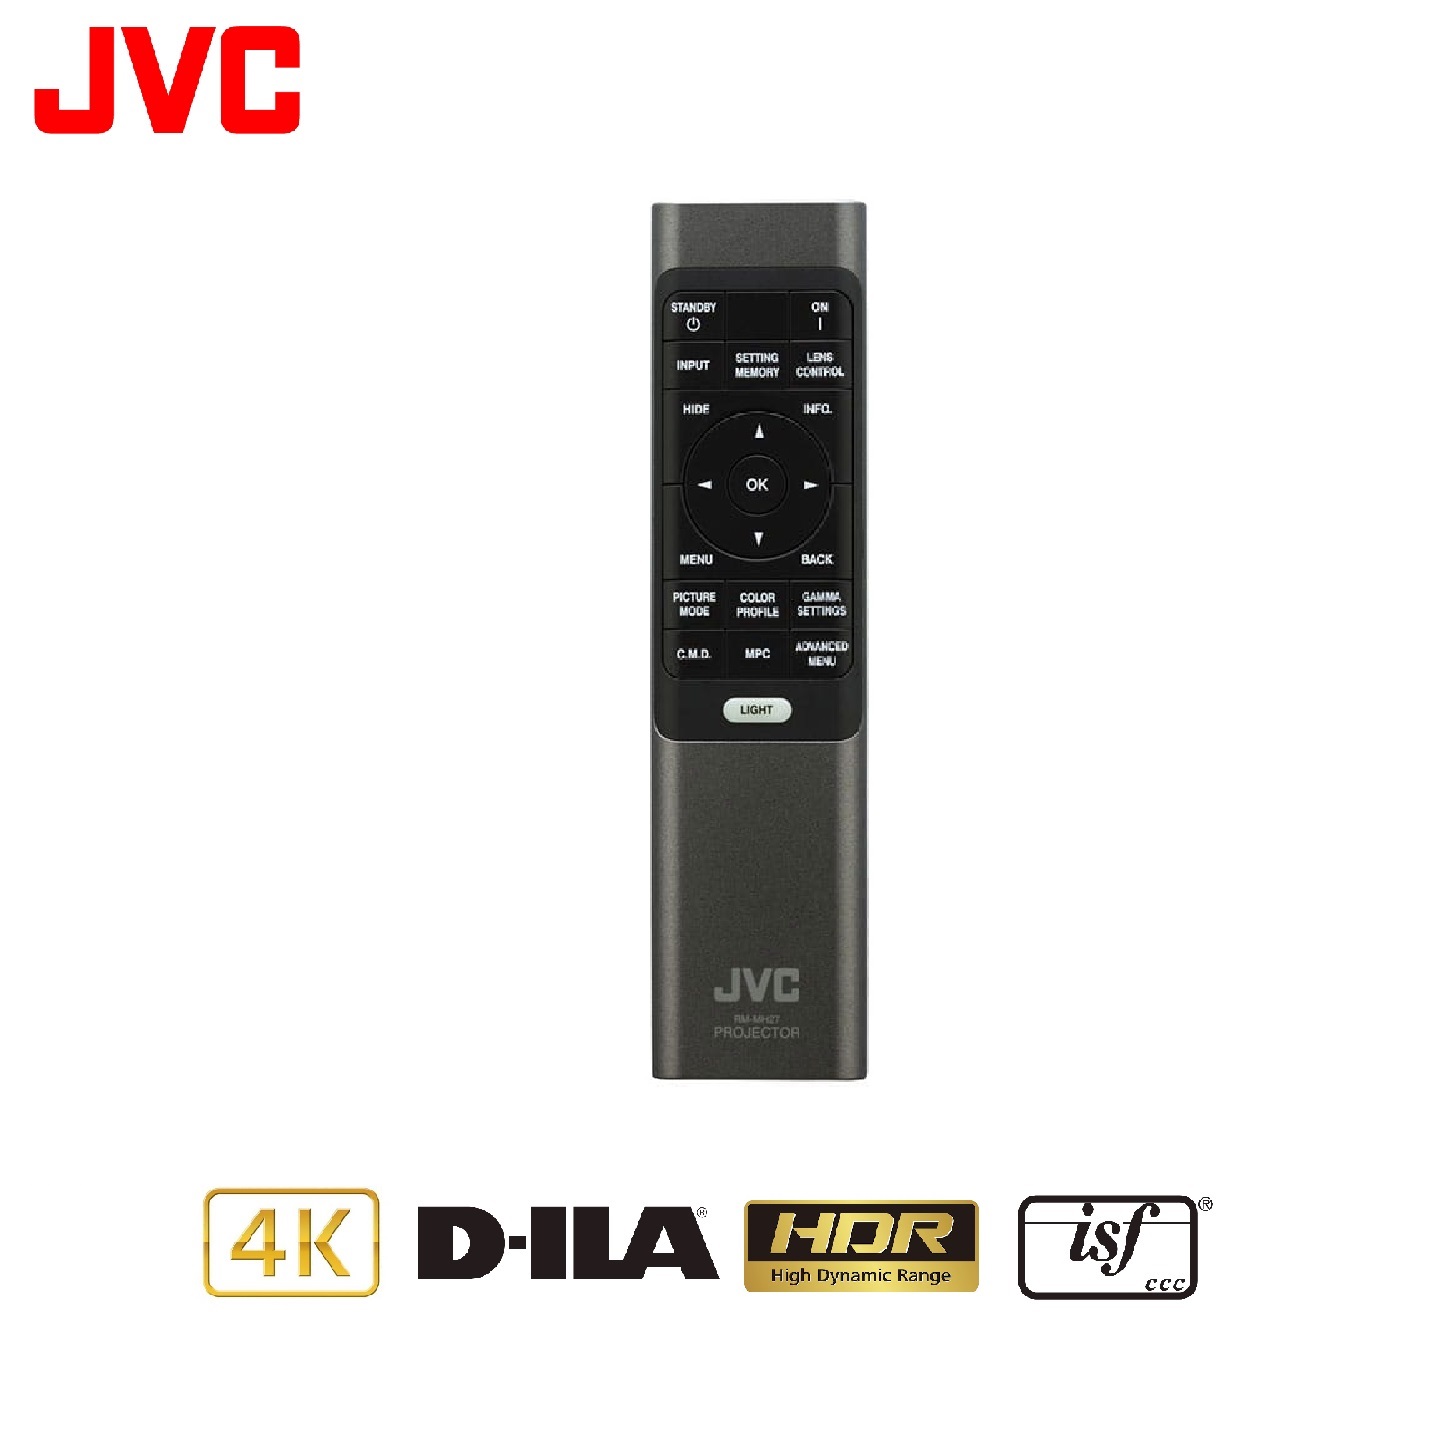 JVC DLA-N5B 原生4K劇院投影機-黑